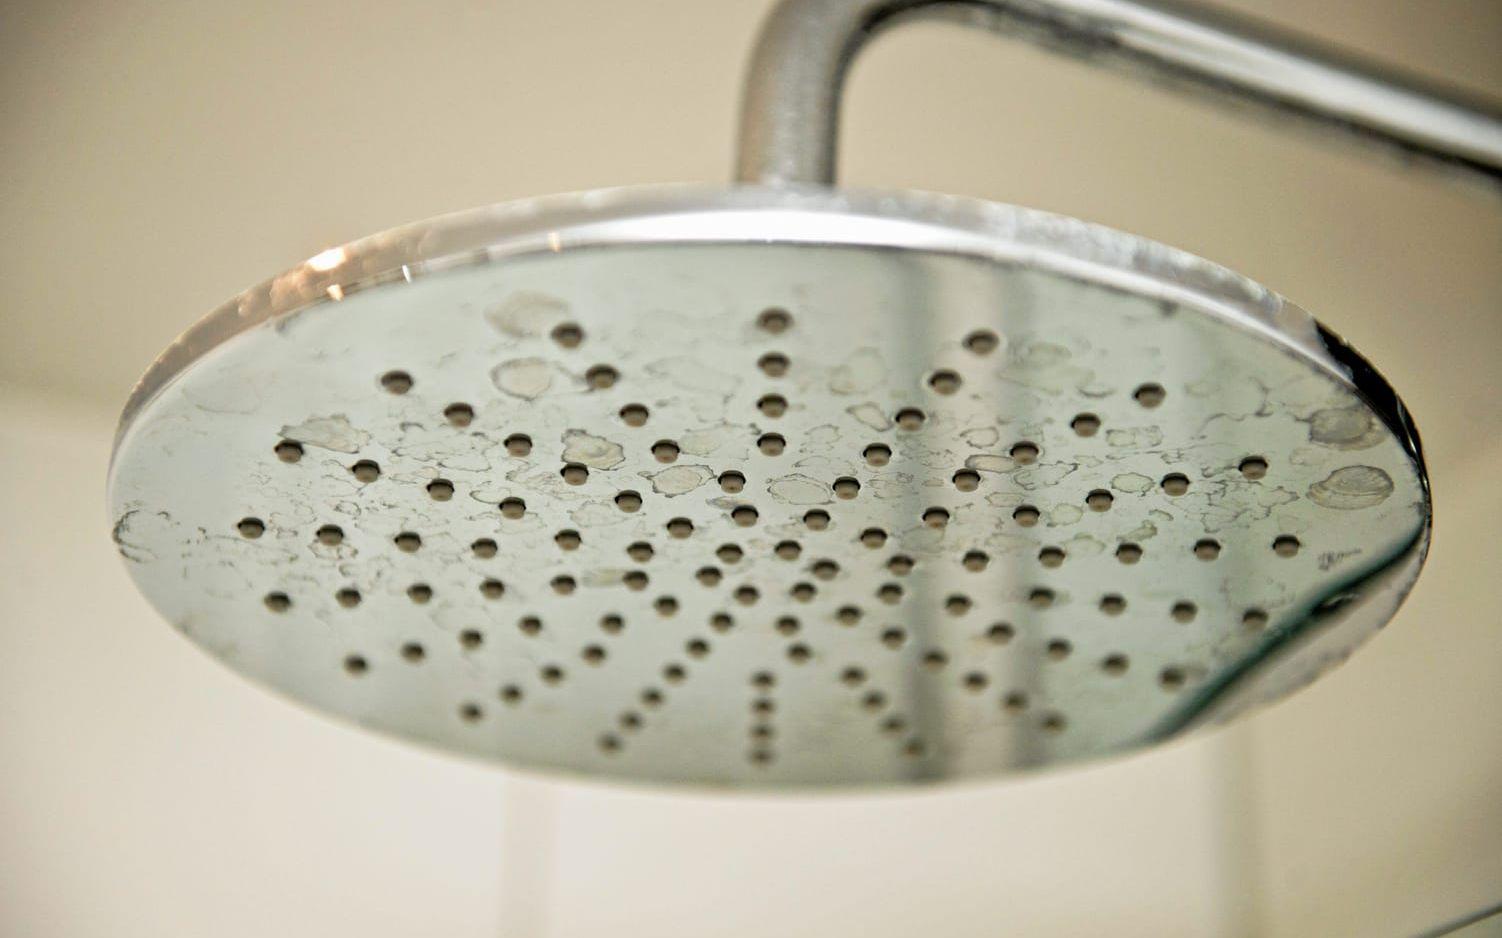 Spartips 1. Ta kortare duschar och stäng av vattnet när du tvålar in dig eller schamponerar håret. Undvik att bada i badkar. Bild: HP, arkiv